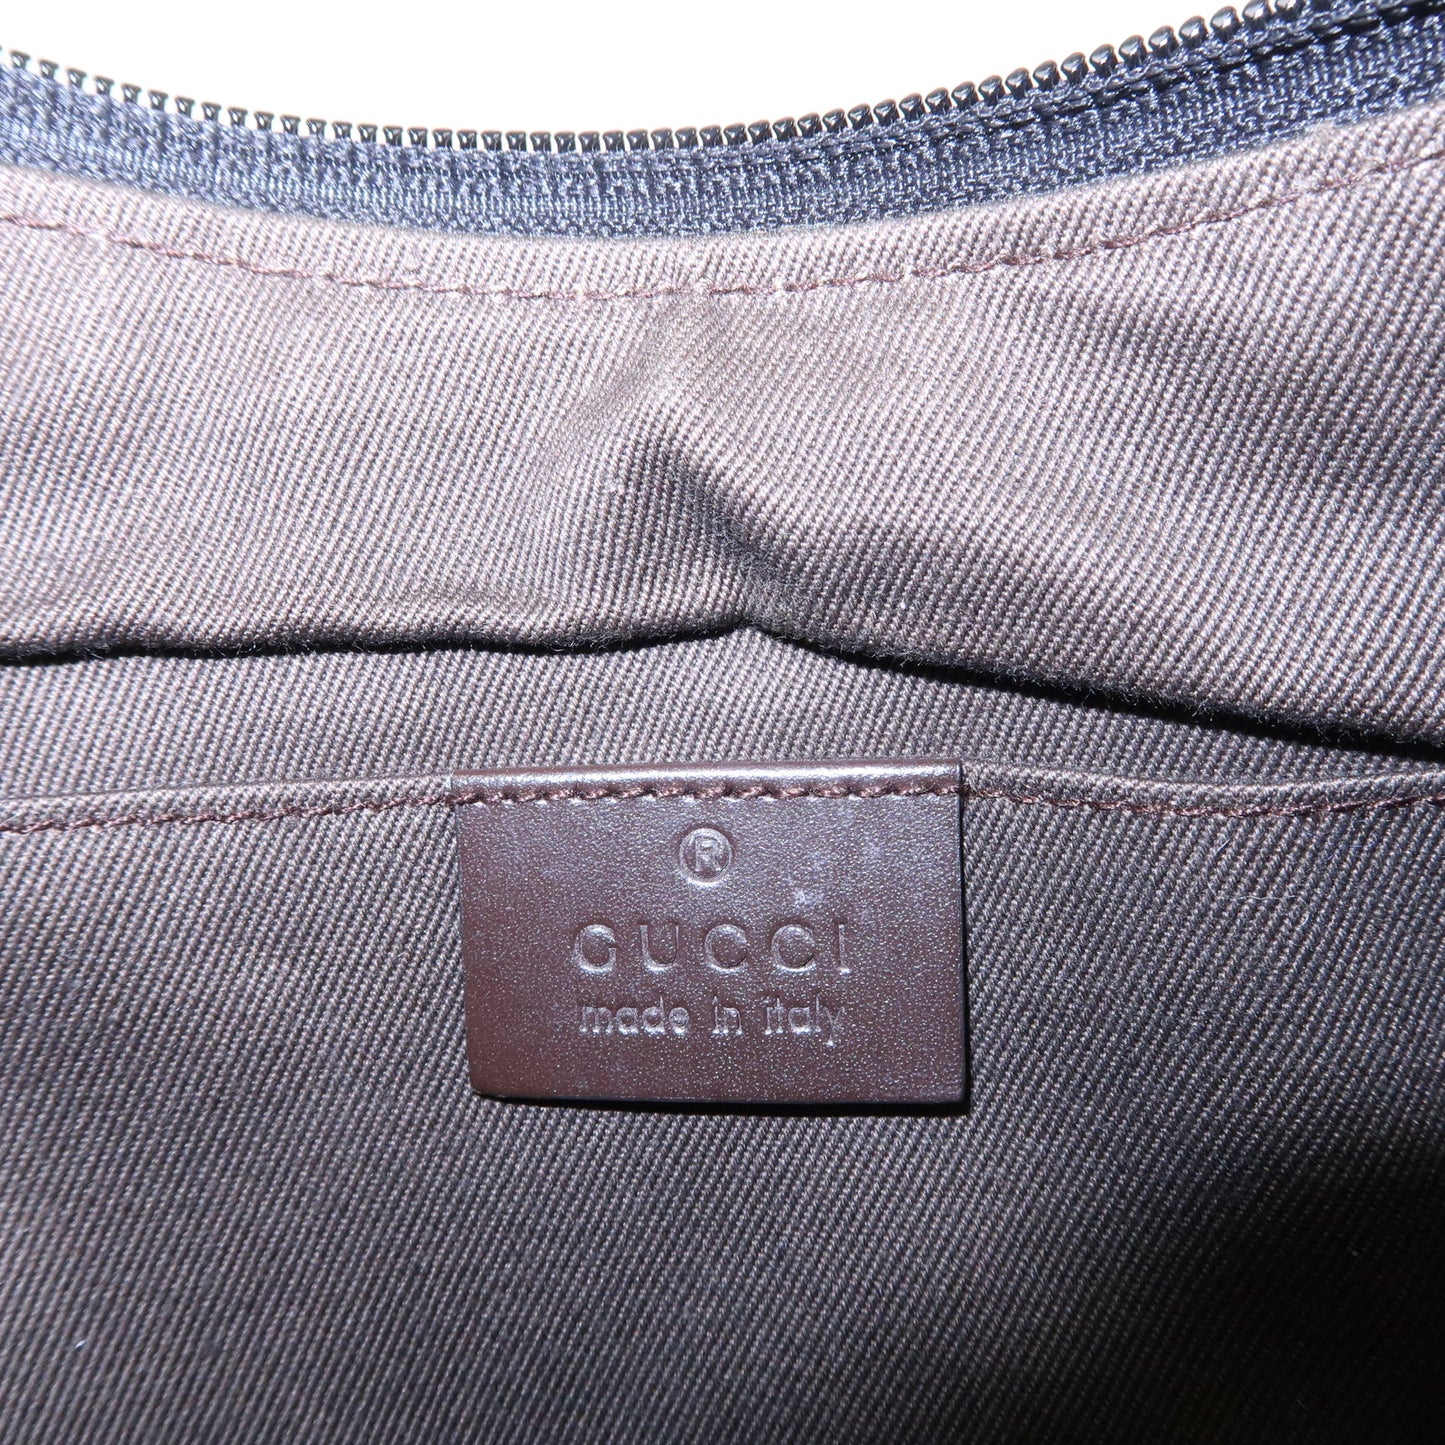 GUCCI GG Canvas Leather Shoulder Bag Black Brown 32160